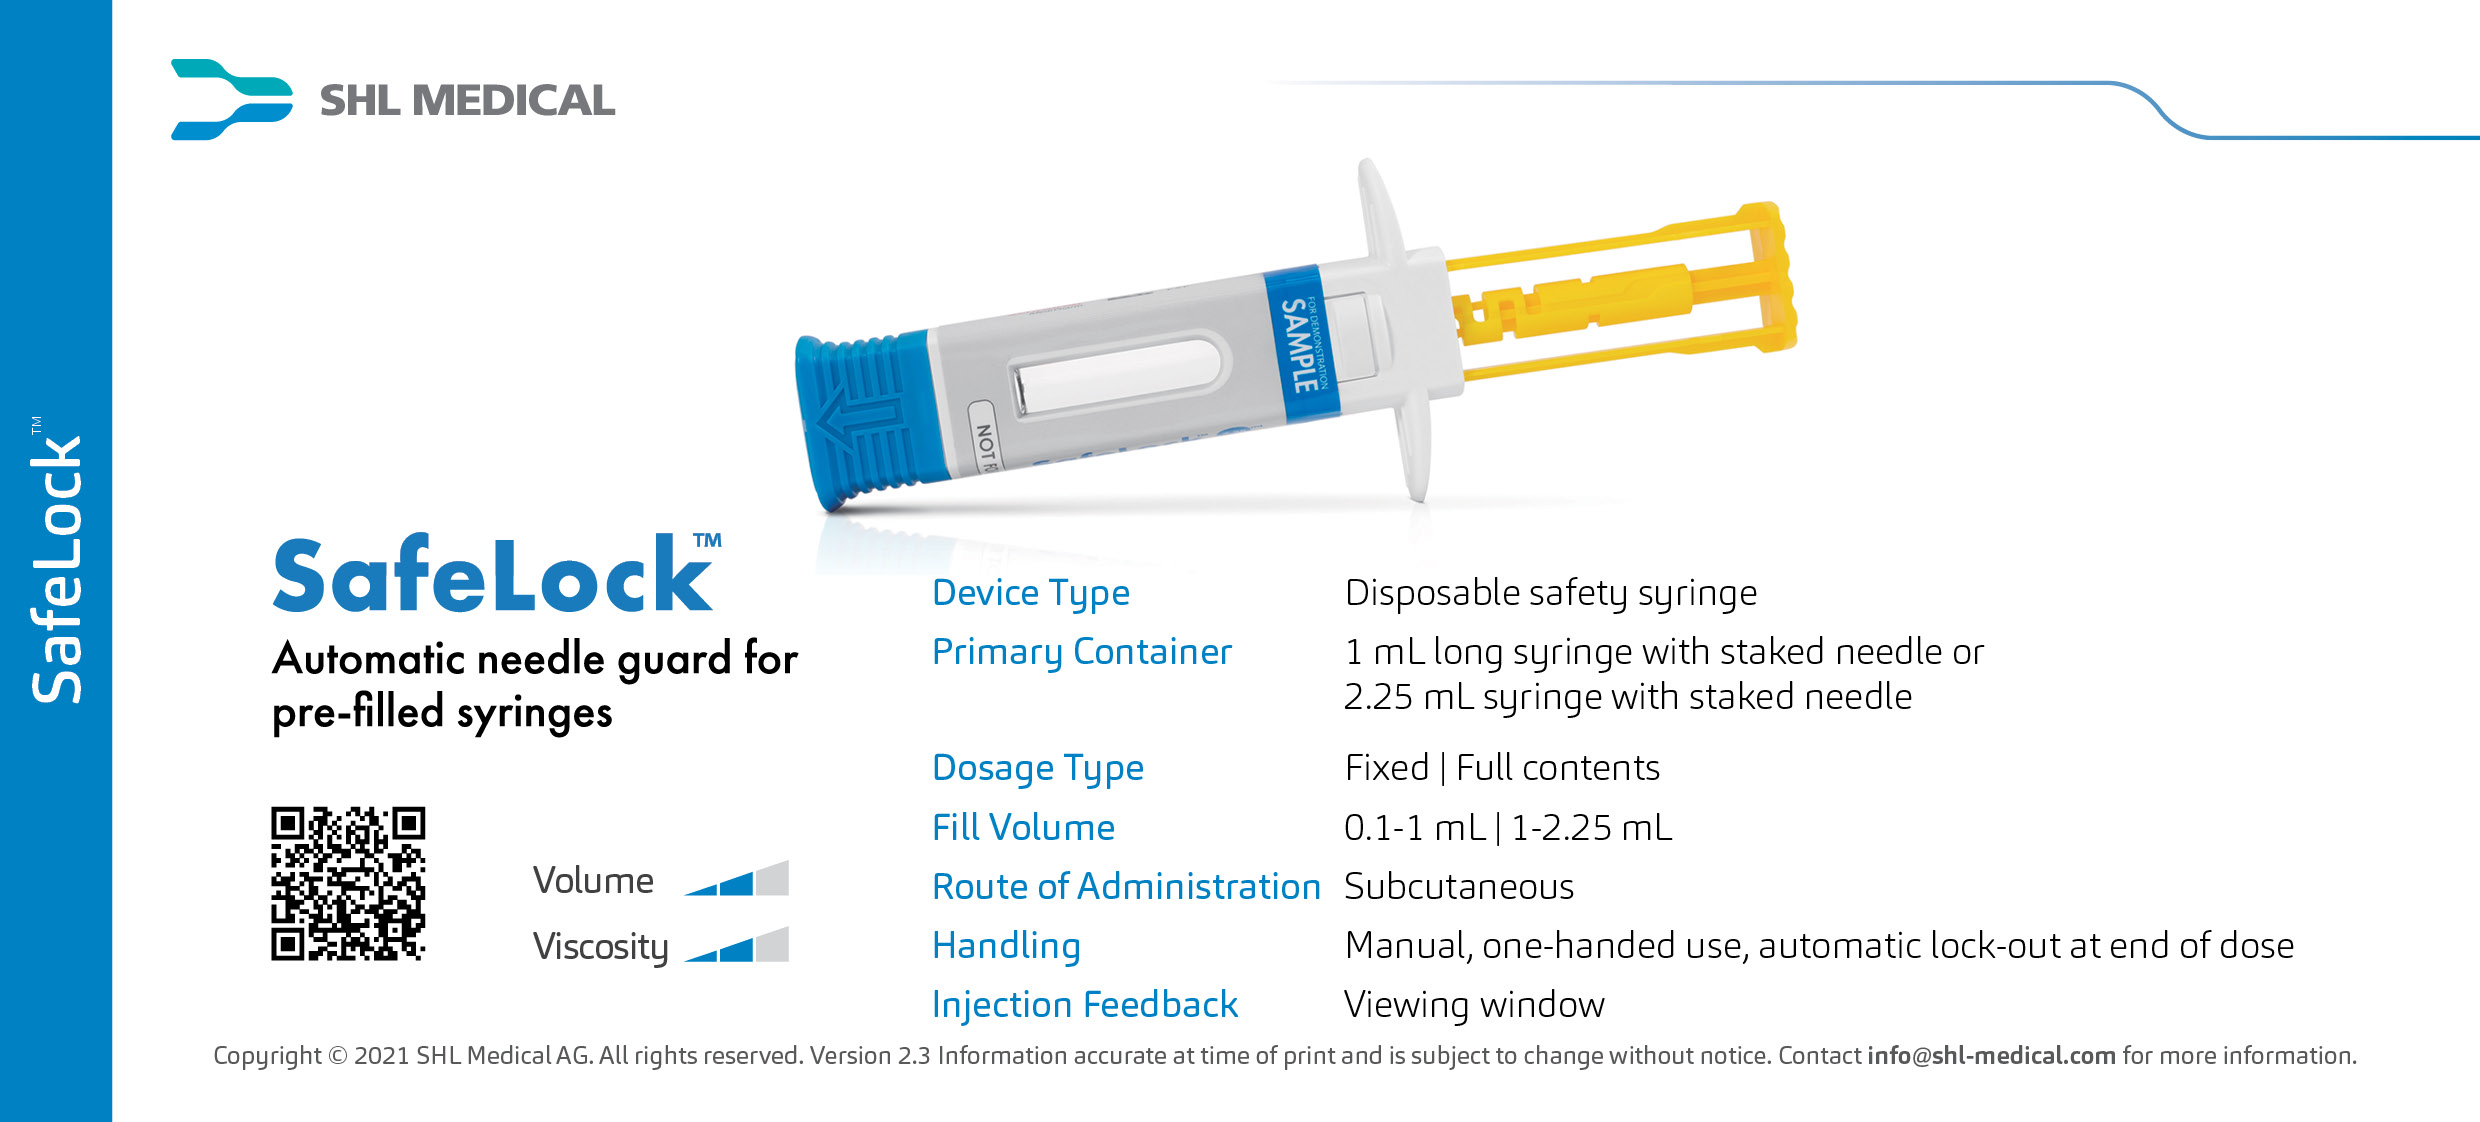 Safelock Safety Syringe by SHL Medical